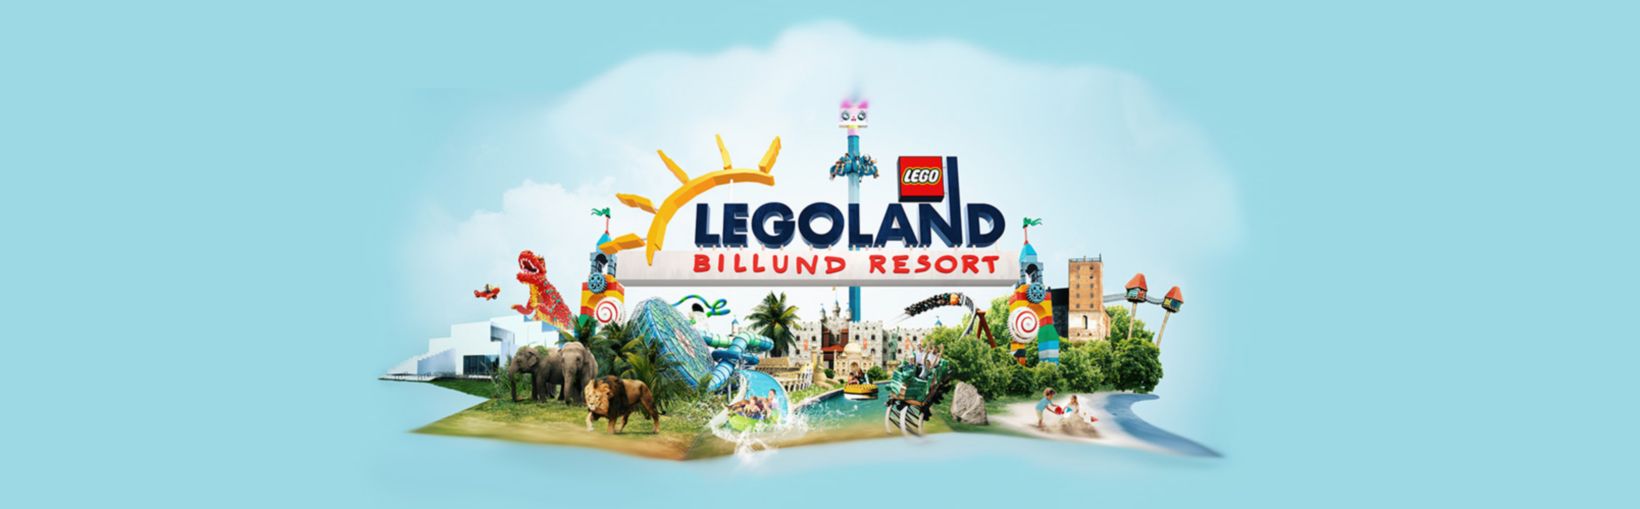 Legoland Billund Resort Heldenbanner